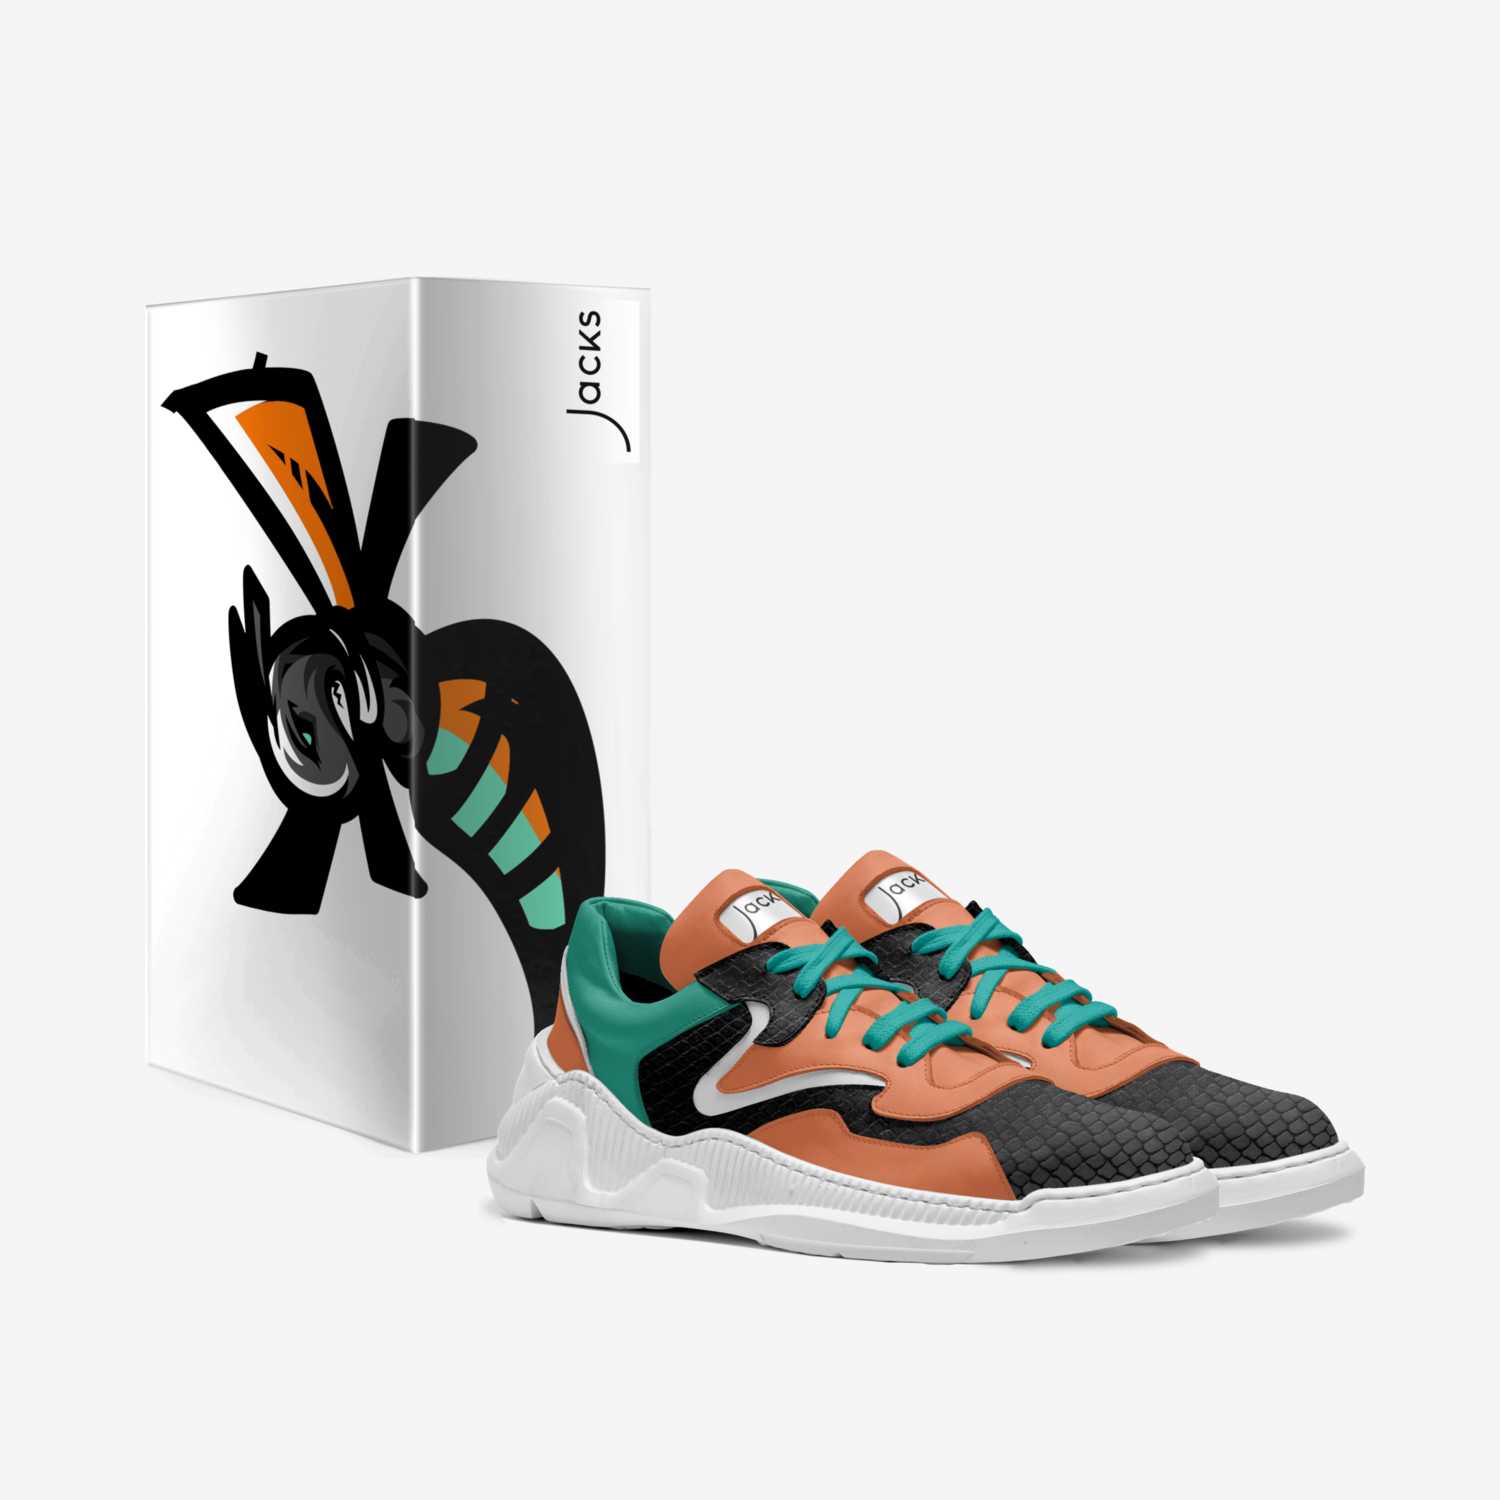 JFW - Origin V3 custom made in Italy shoes by Marvin Ricks Latoya Jackson | Box view